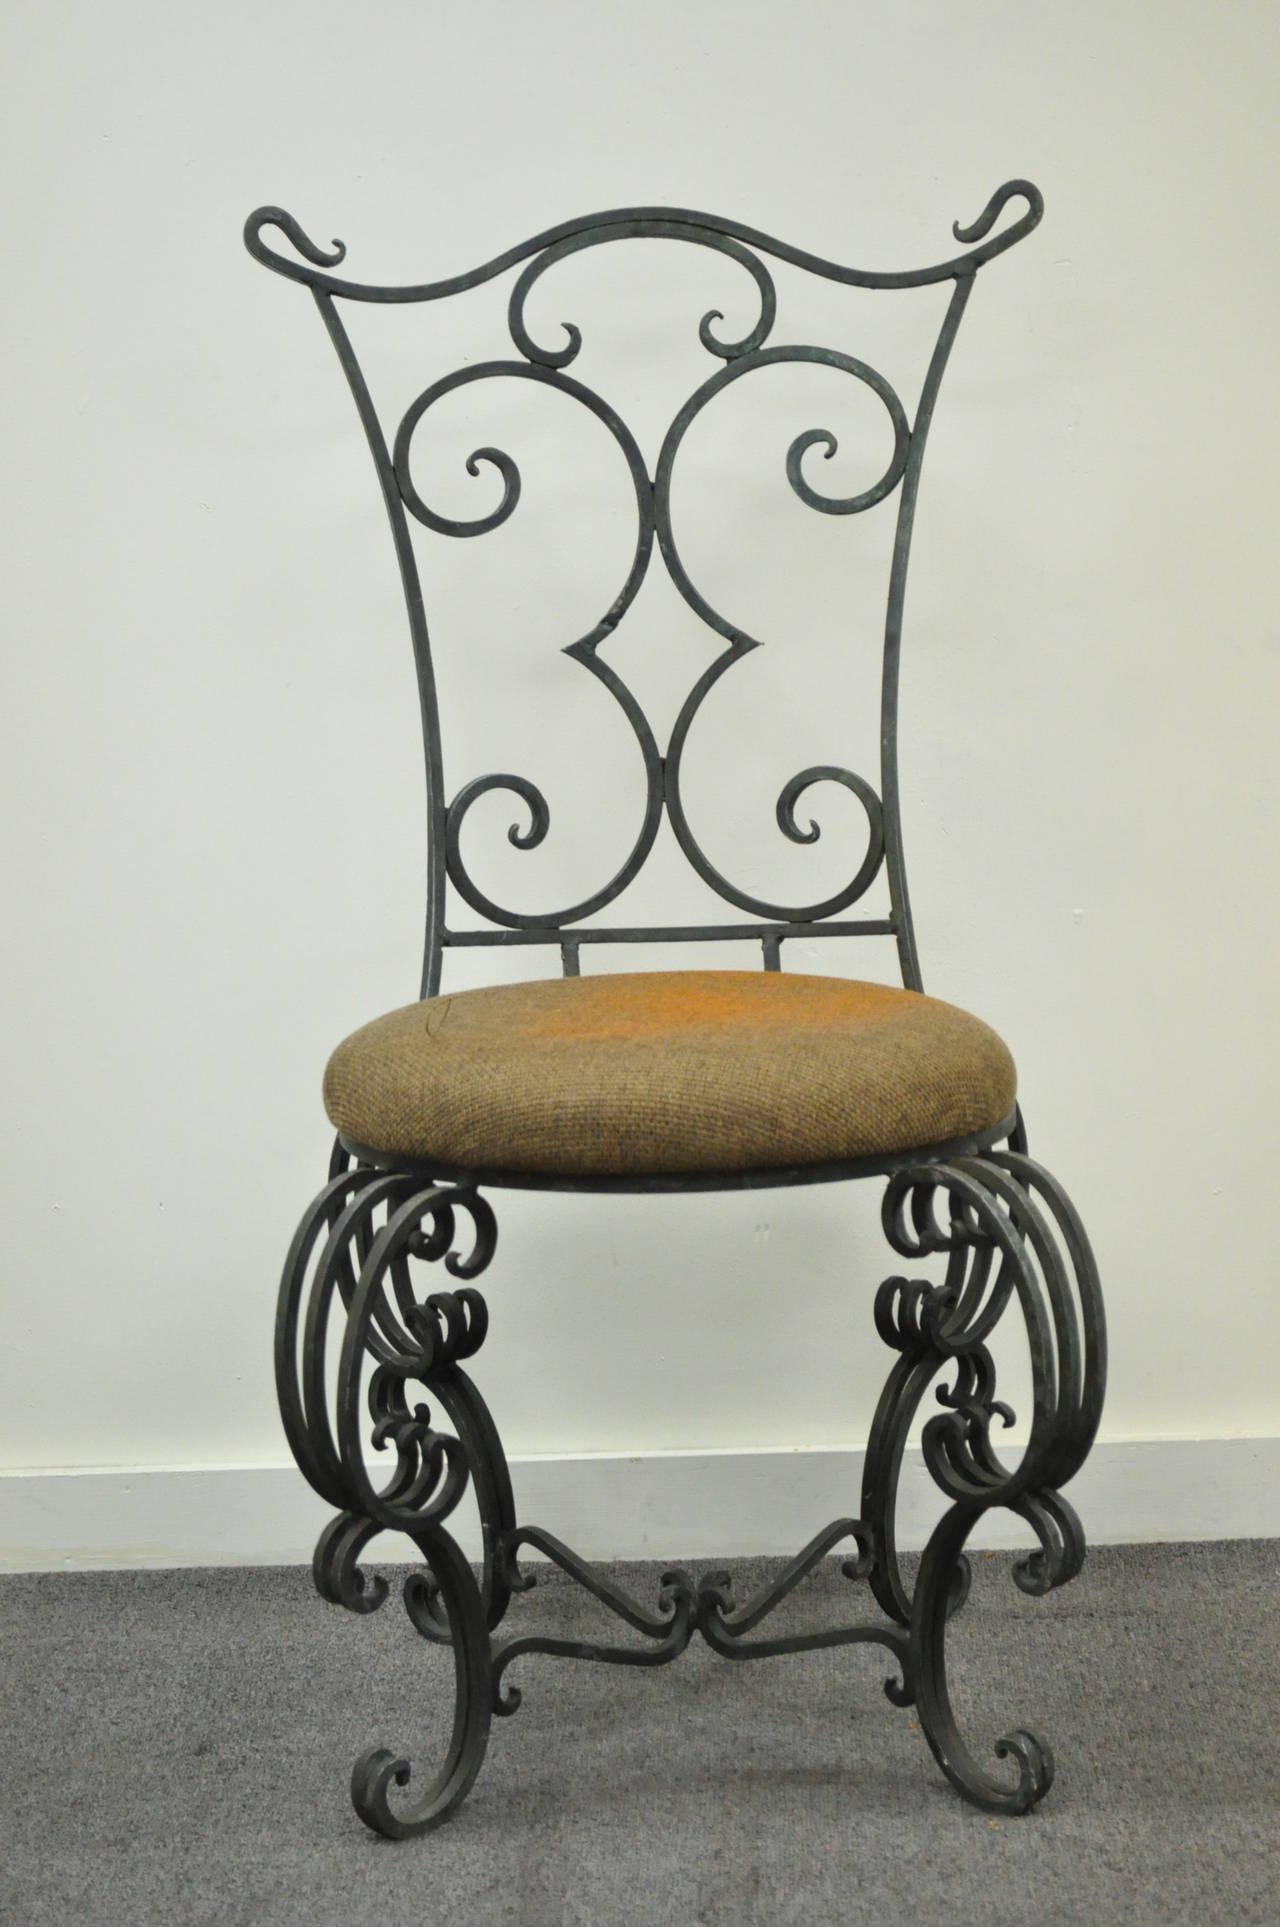 Superbe chaise d'appoint à volutes de style Art nouveau français avec un cadre en fer forgé et travaillé à la main. Cet article présente les lignes les plus belles et les plus fantaisistes qui soient, notamment le dossier orné, les fleurons, les